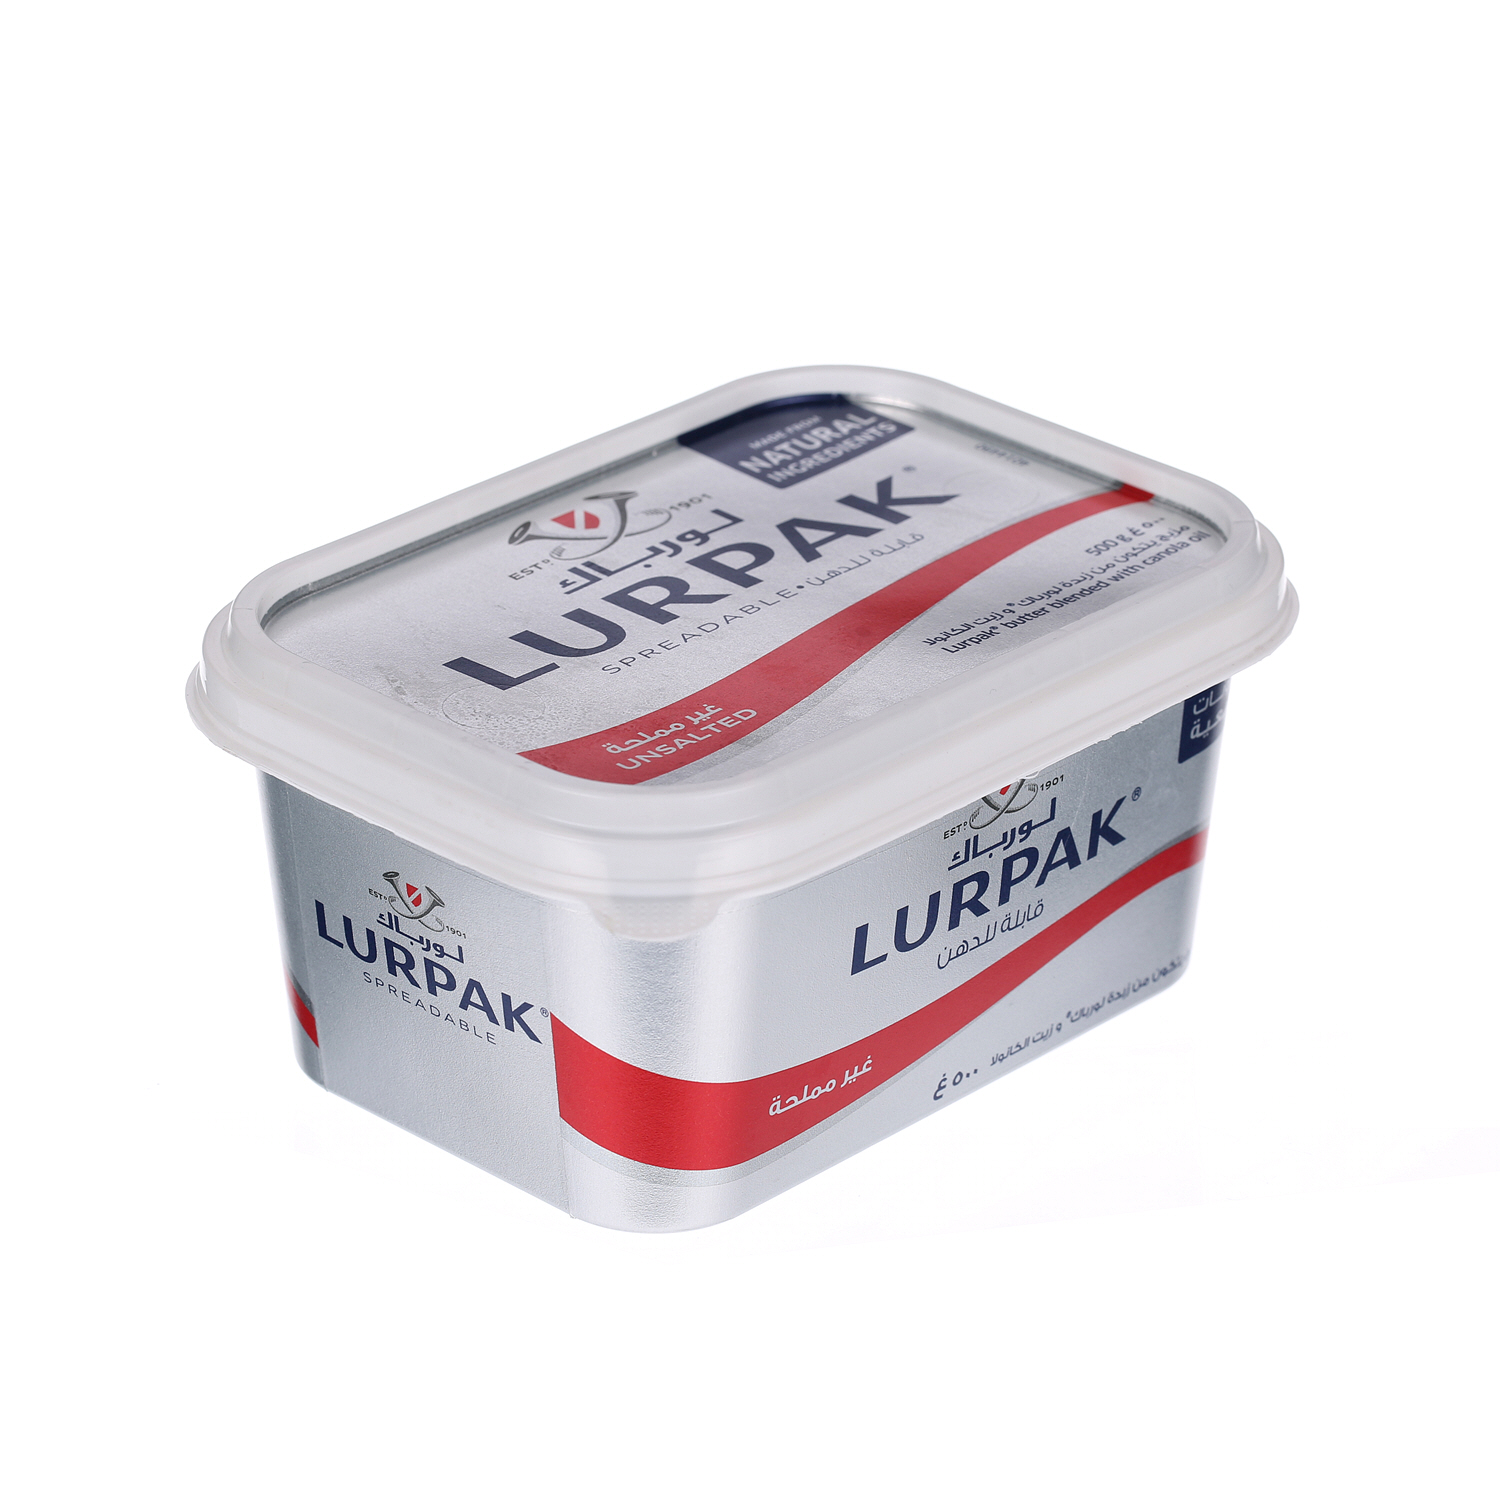 Lurpak Butter Spreadable Unsalted 500gm